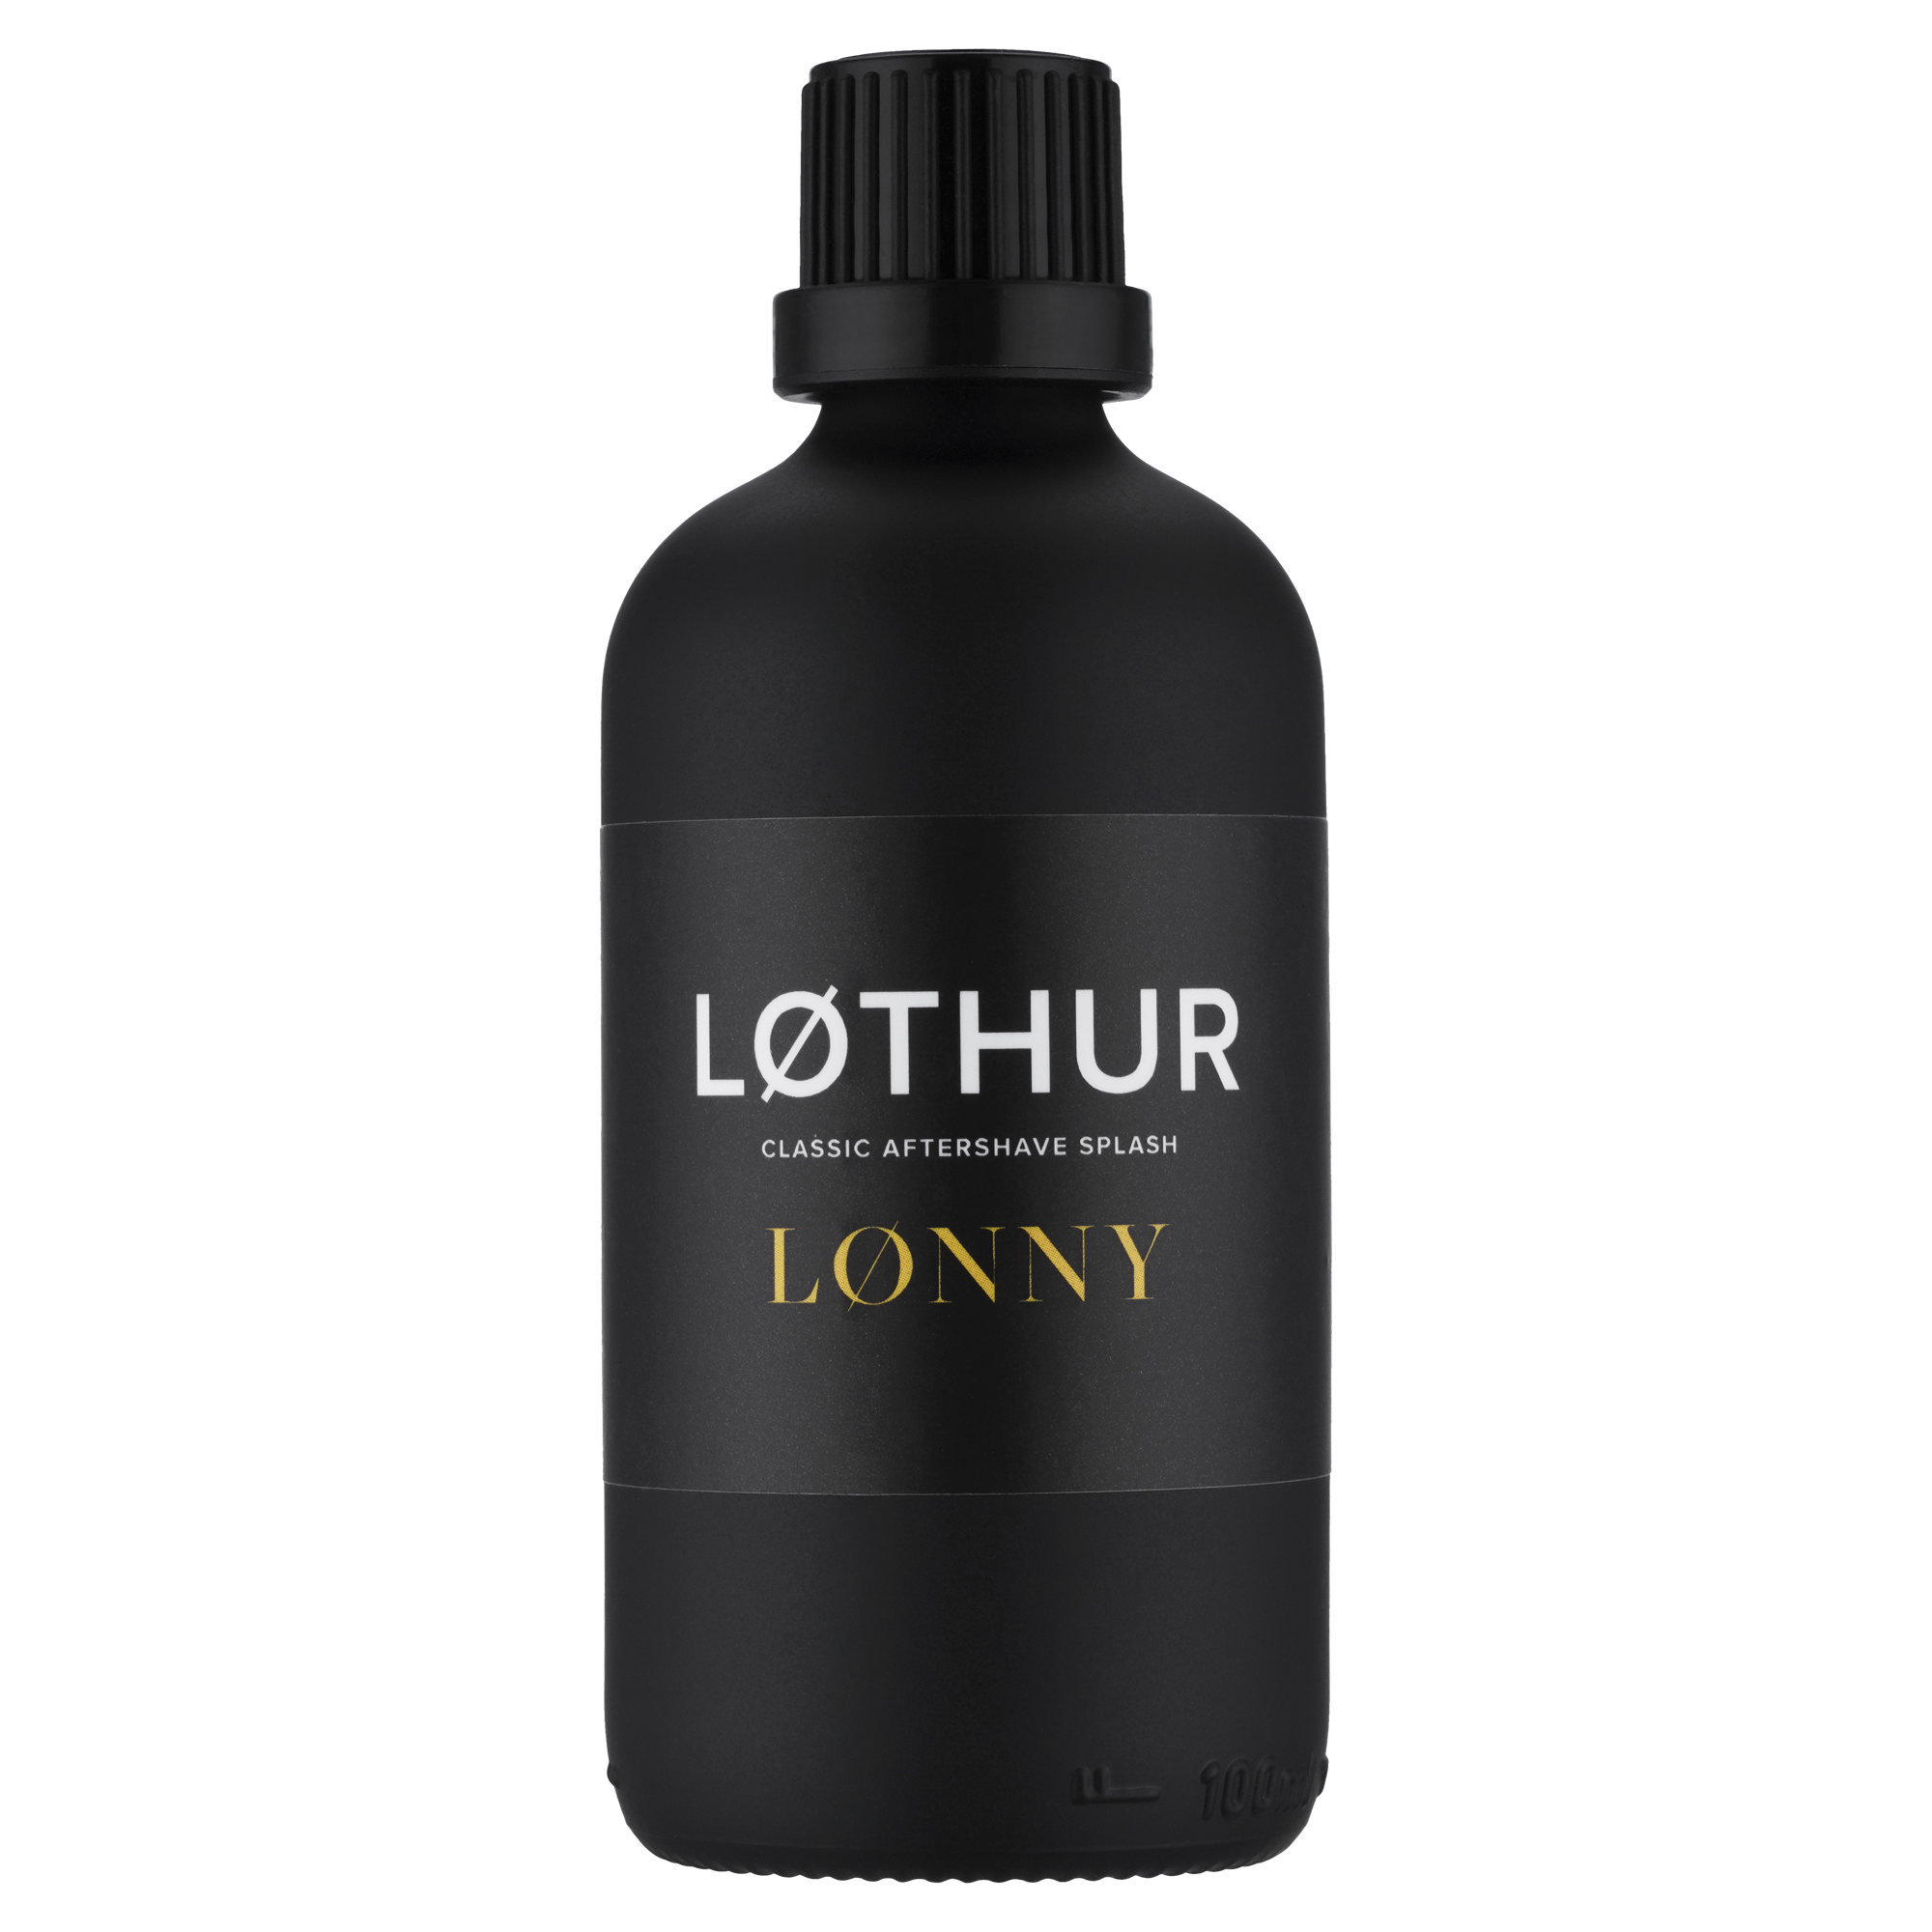 Lothur Lonny Aftershave Splash